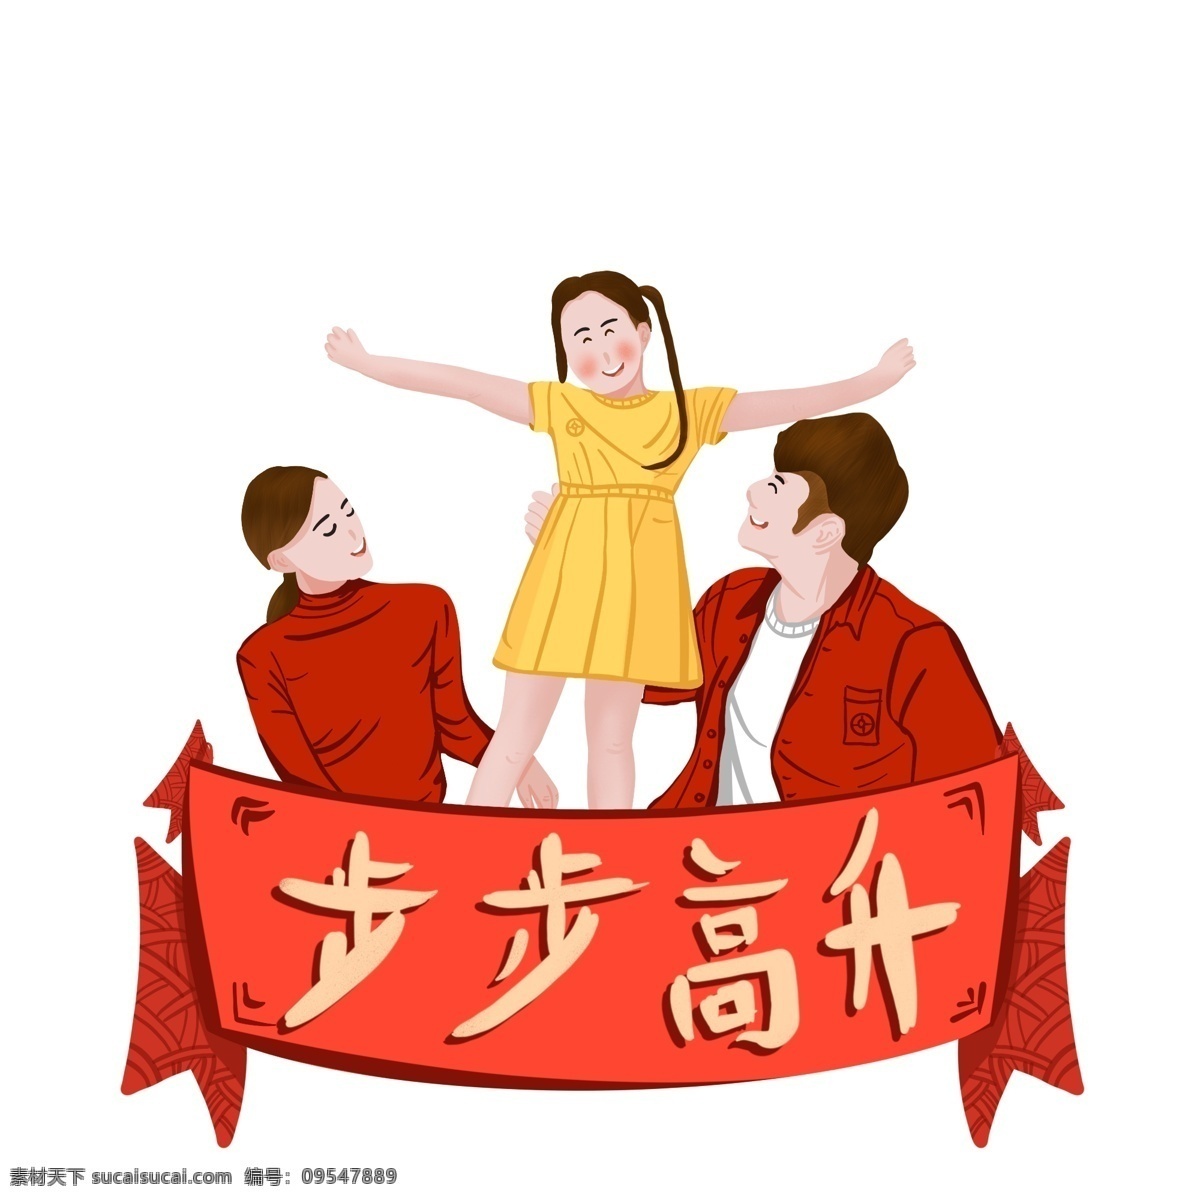 2019 新年 春节 猪年 一家人 手绘 插画 免扣